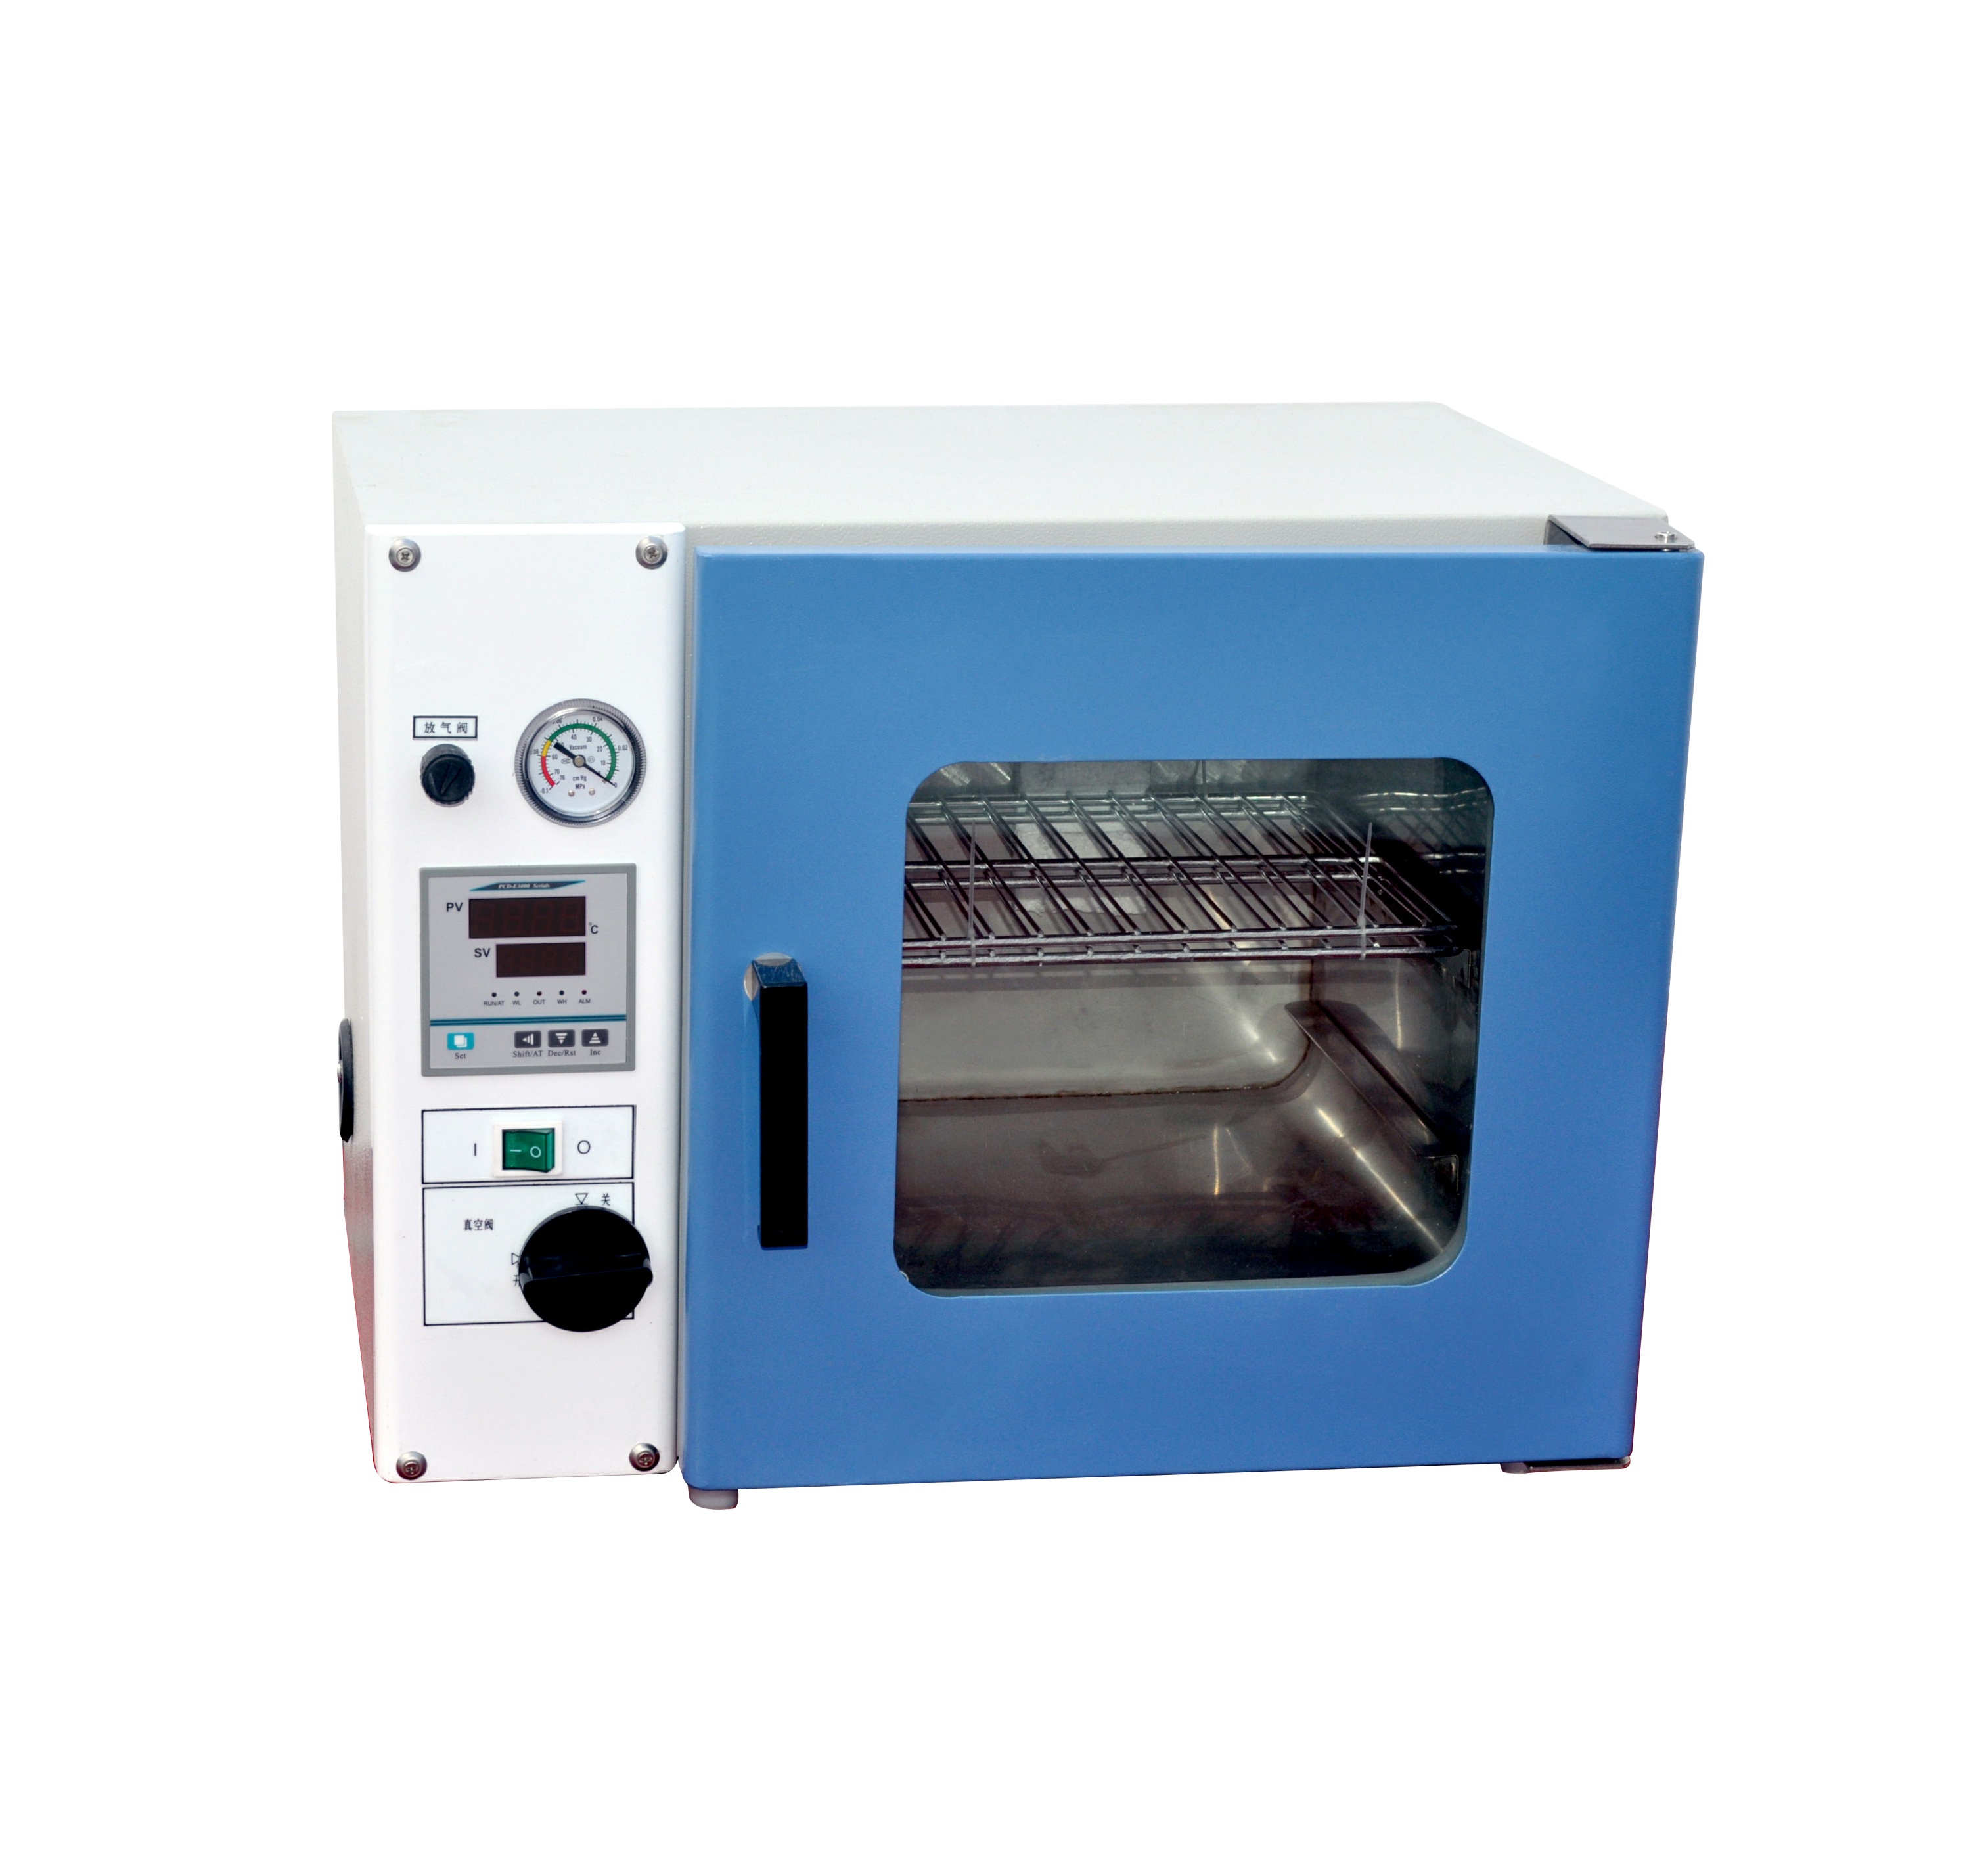 真空干燥箱DZF-6020高温烘箱